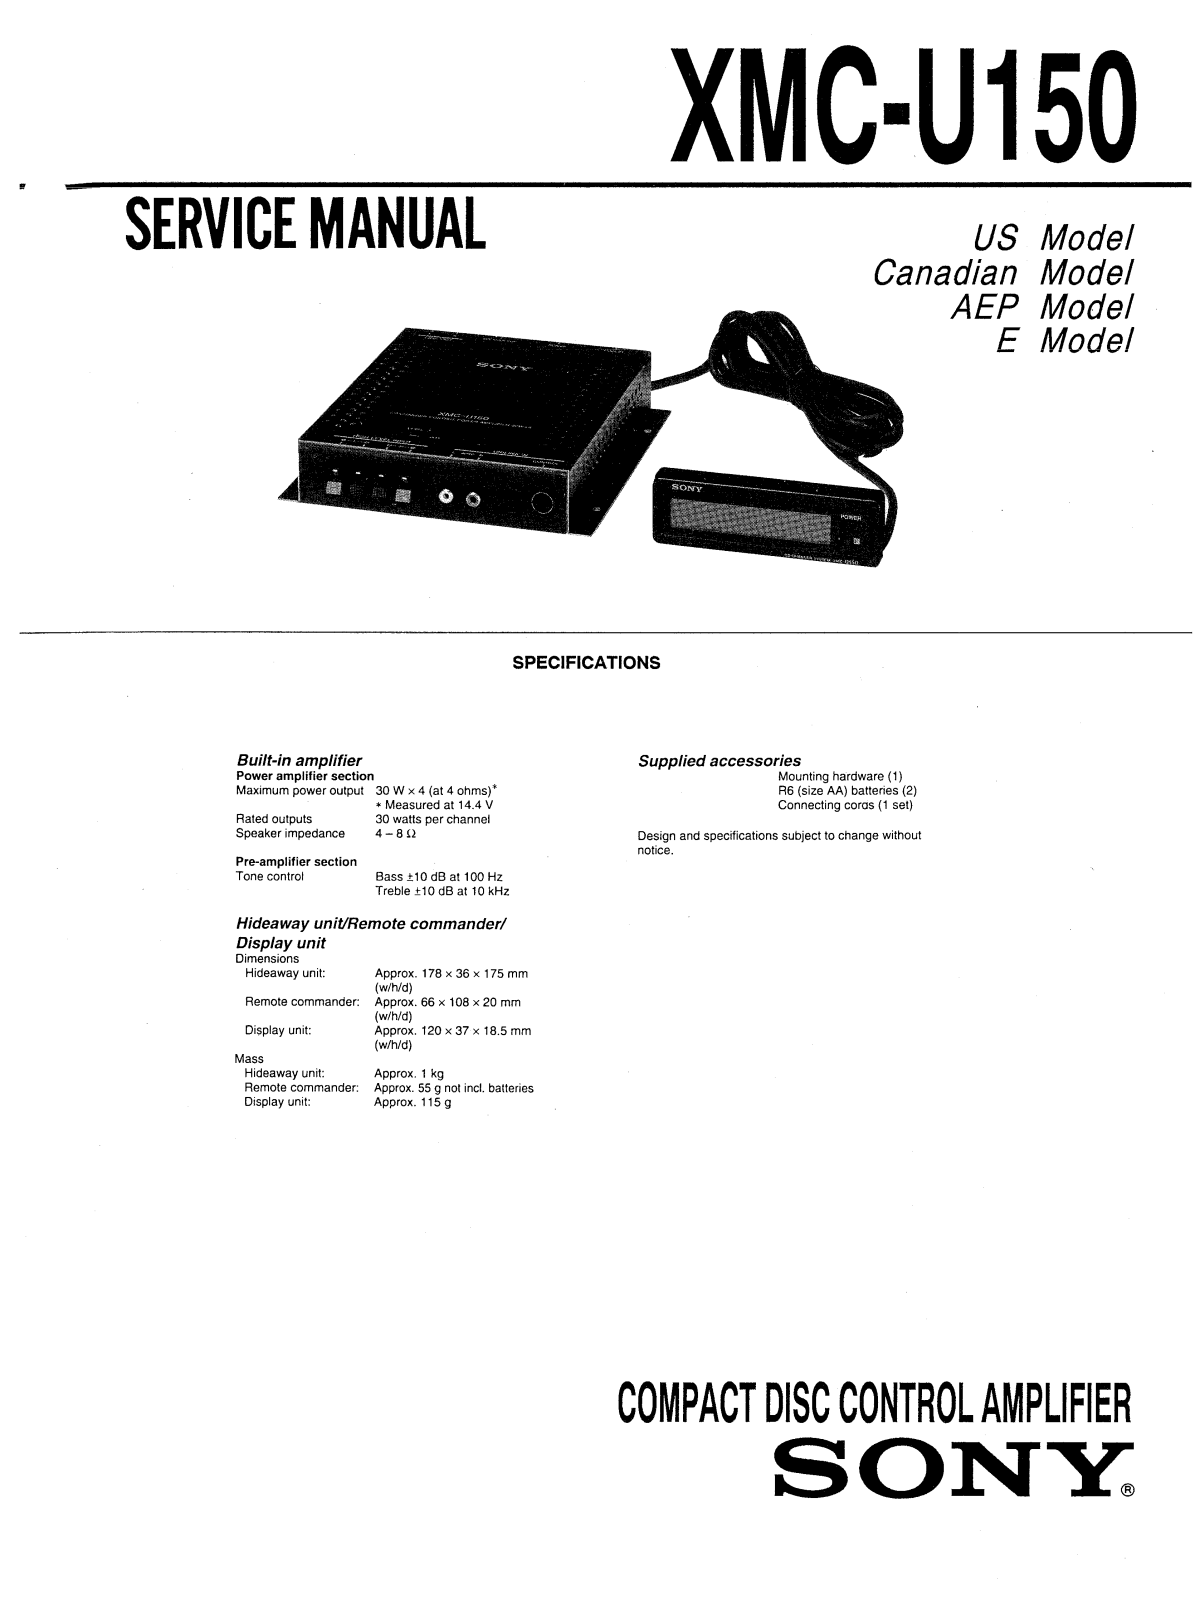 Sony XMCU-150 Service manual